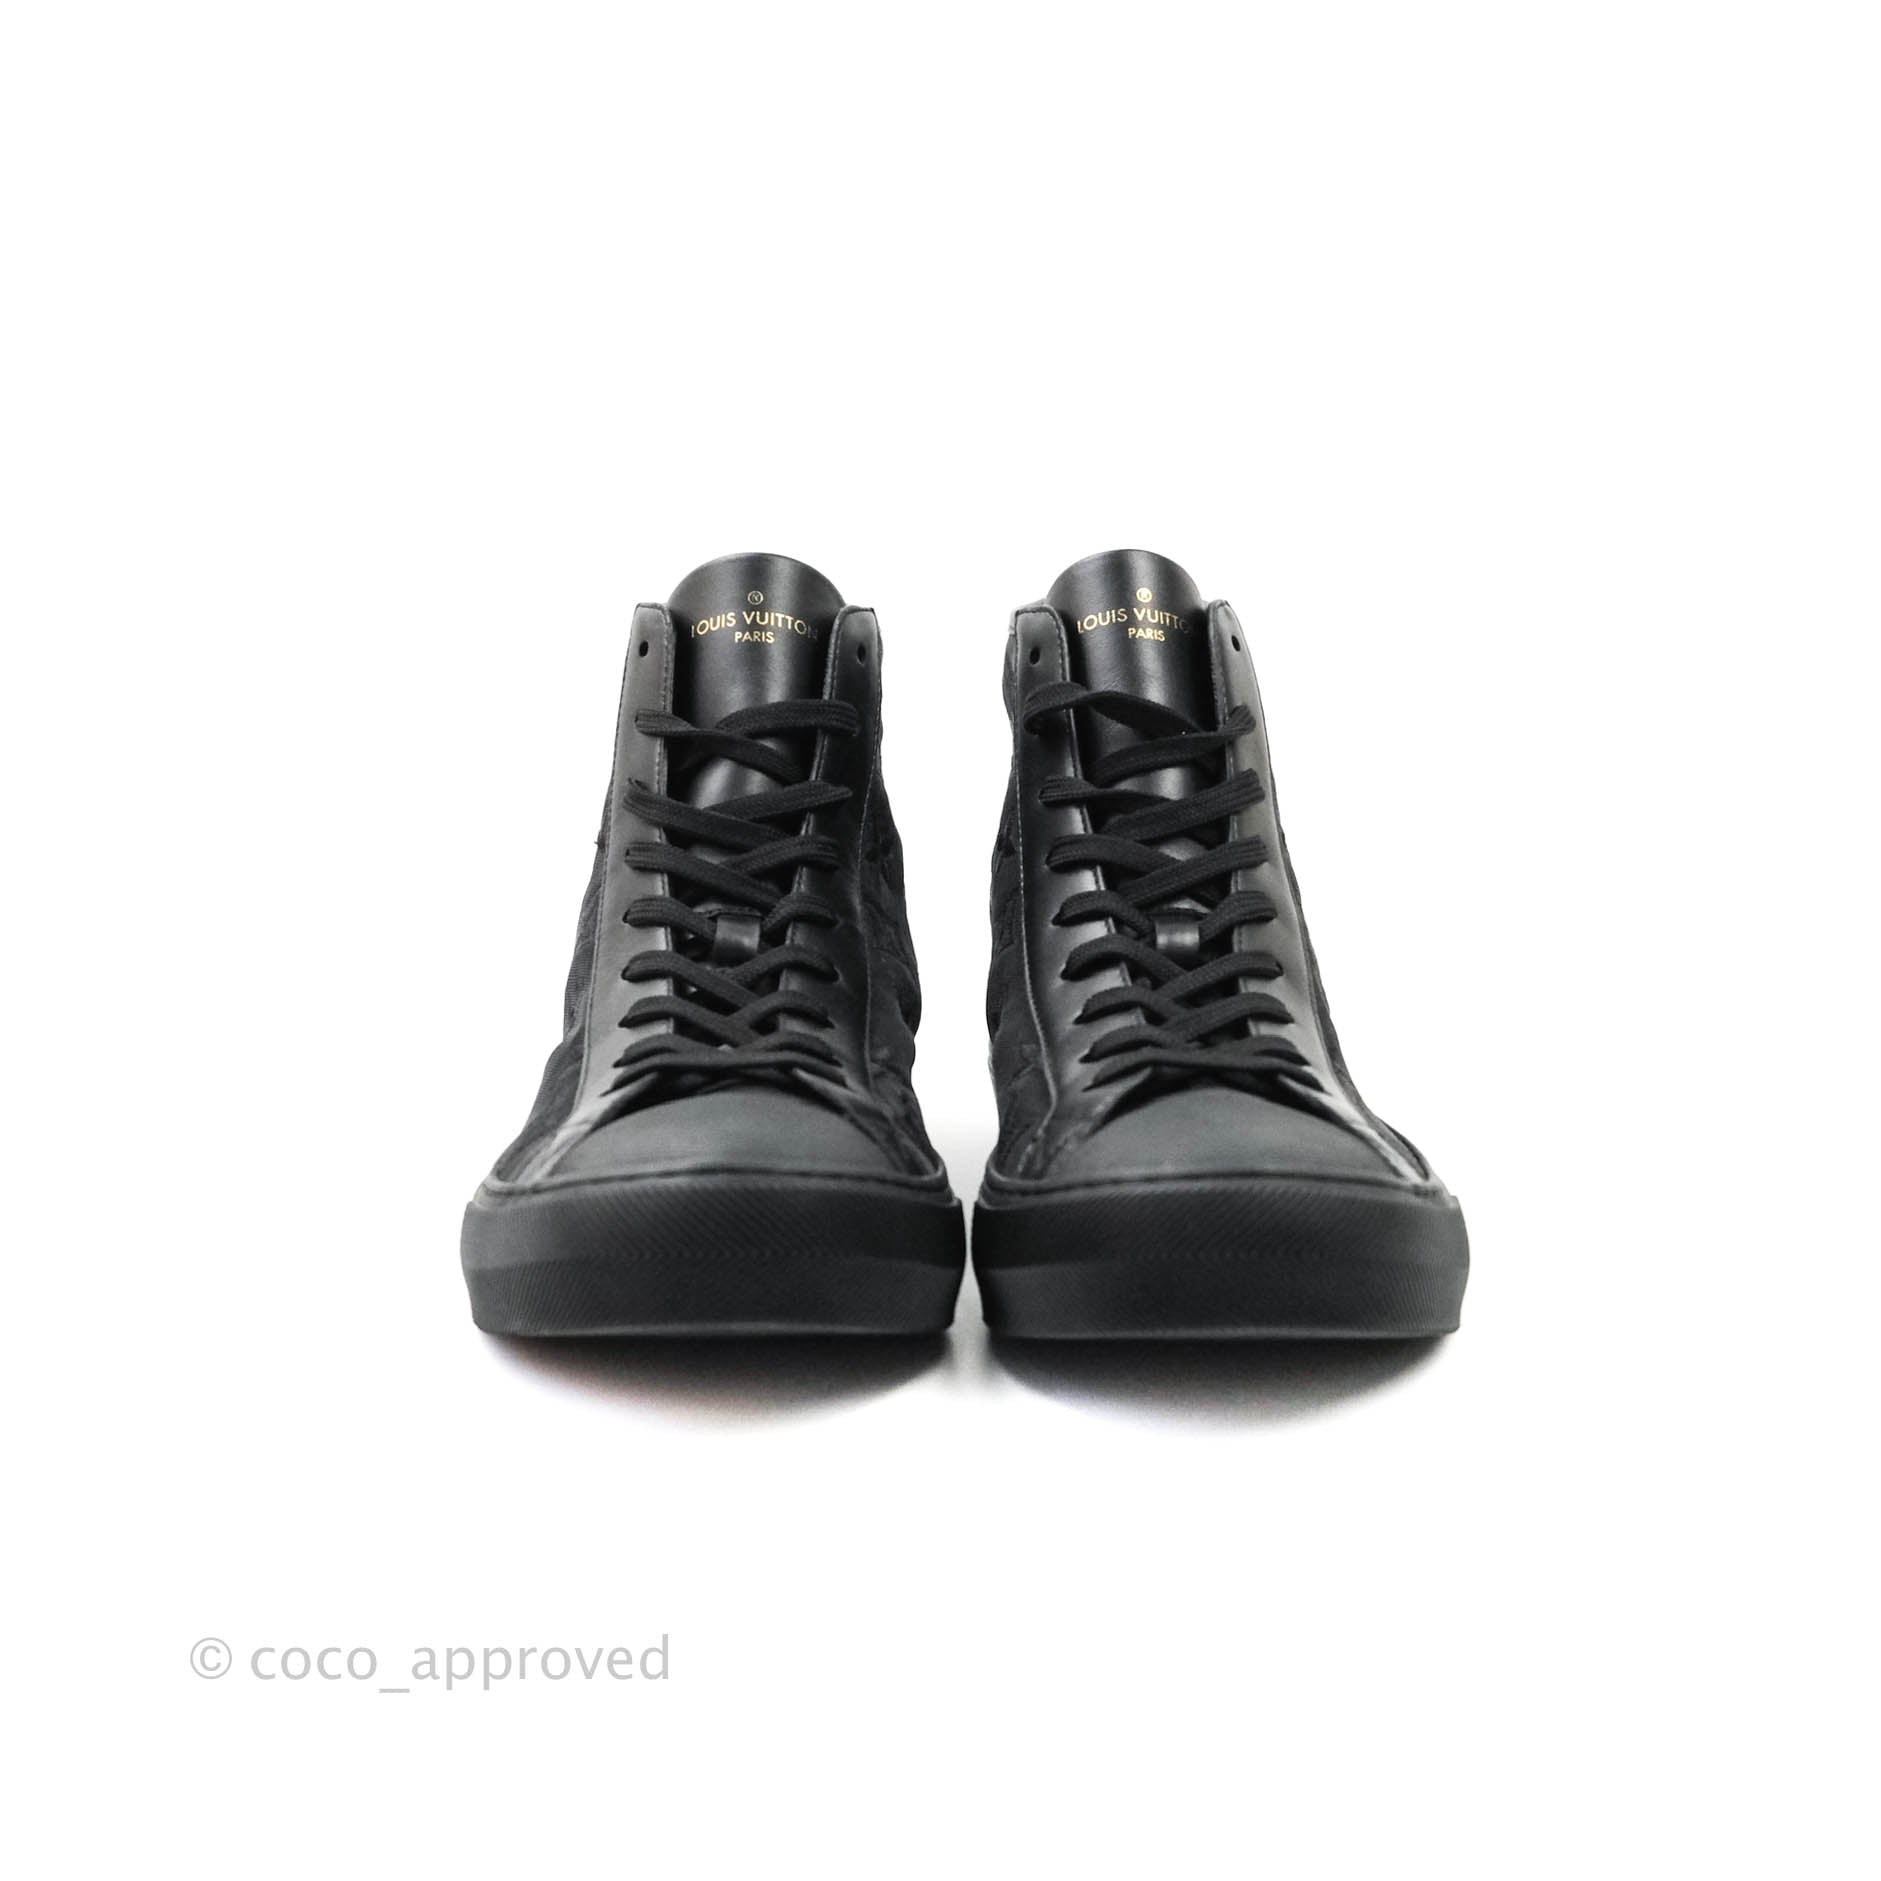 Louis Vuitton Stellar Sneaker Boot - Bags Valley